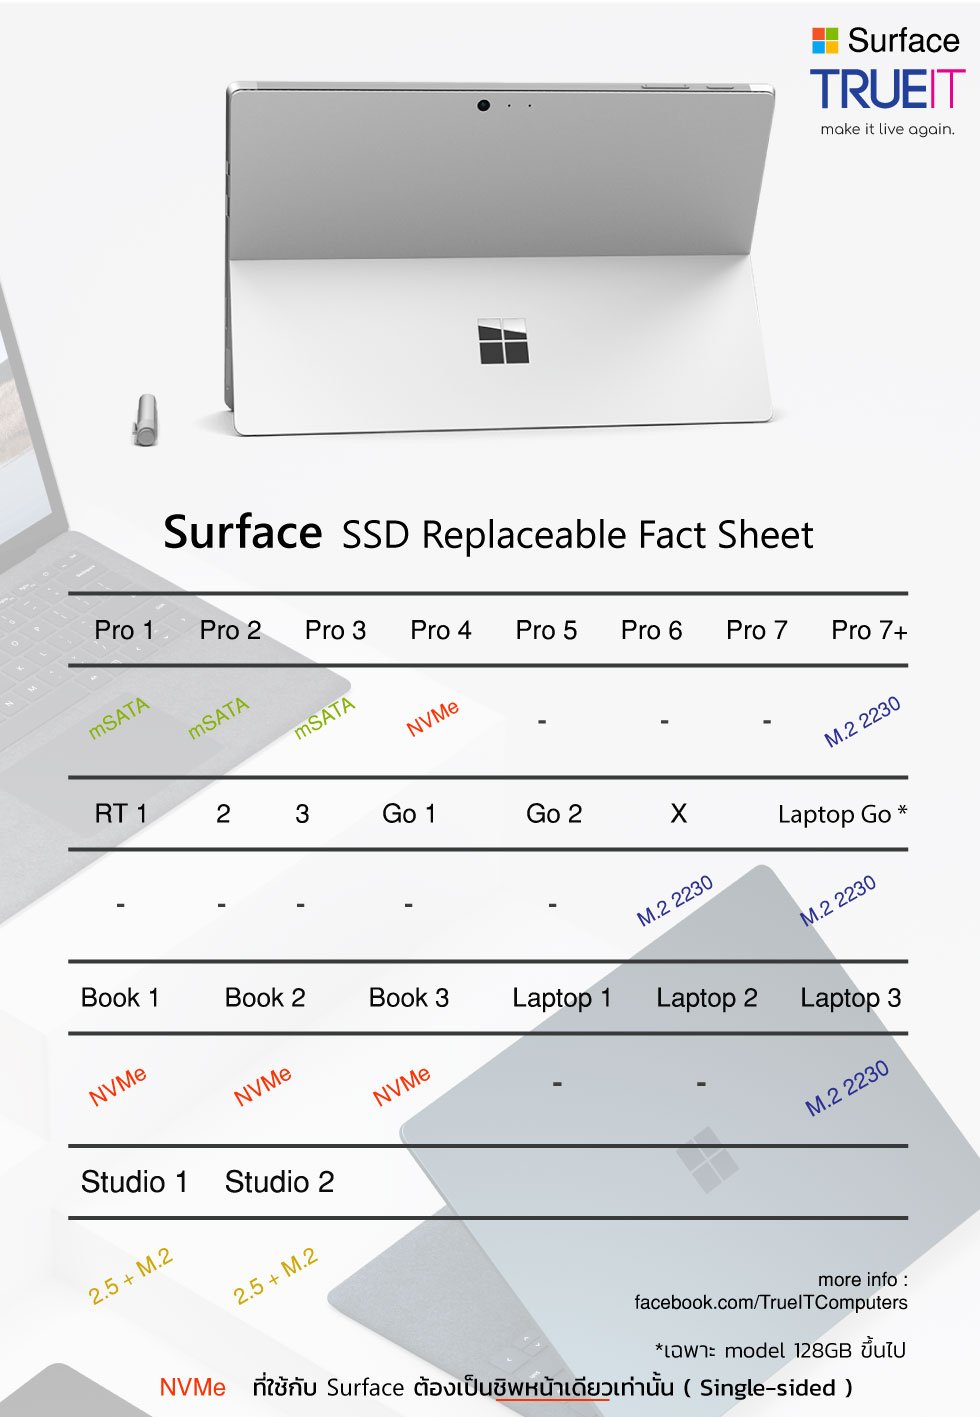 Surface ใช้ SSD ประเภทไหนบ้าง